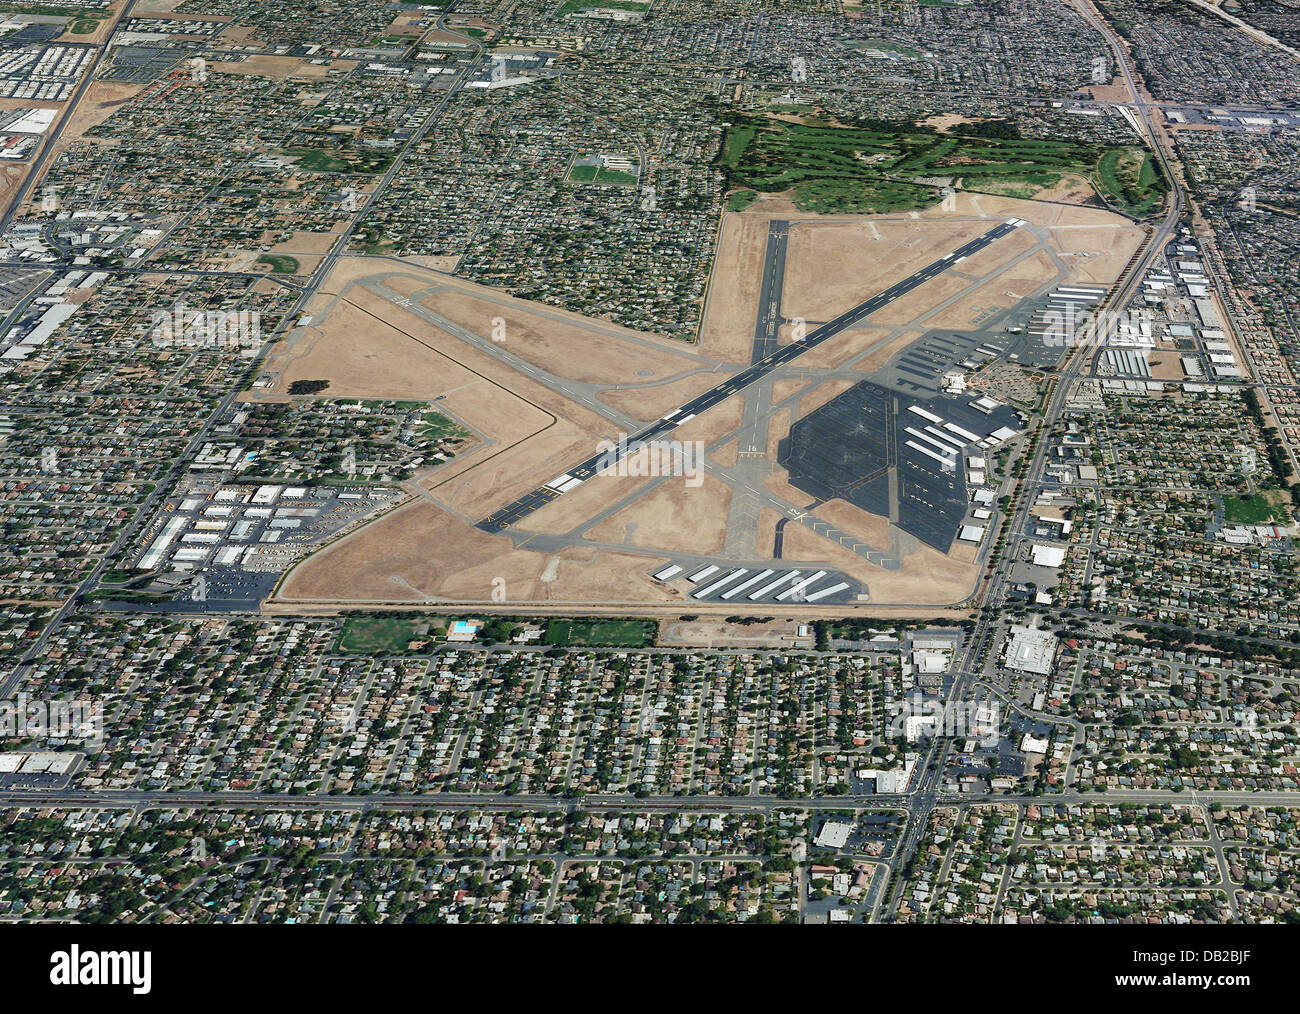 Sacramento Executive Airport